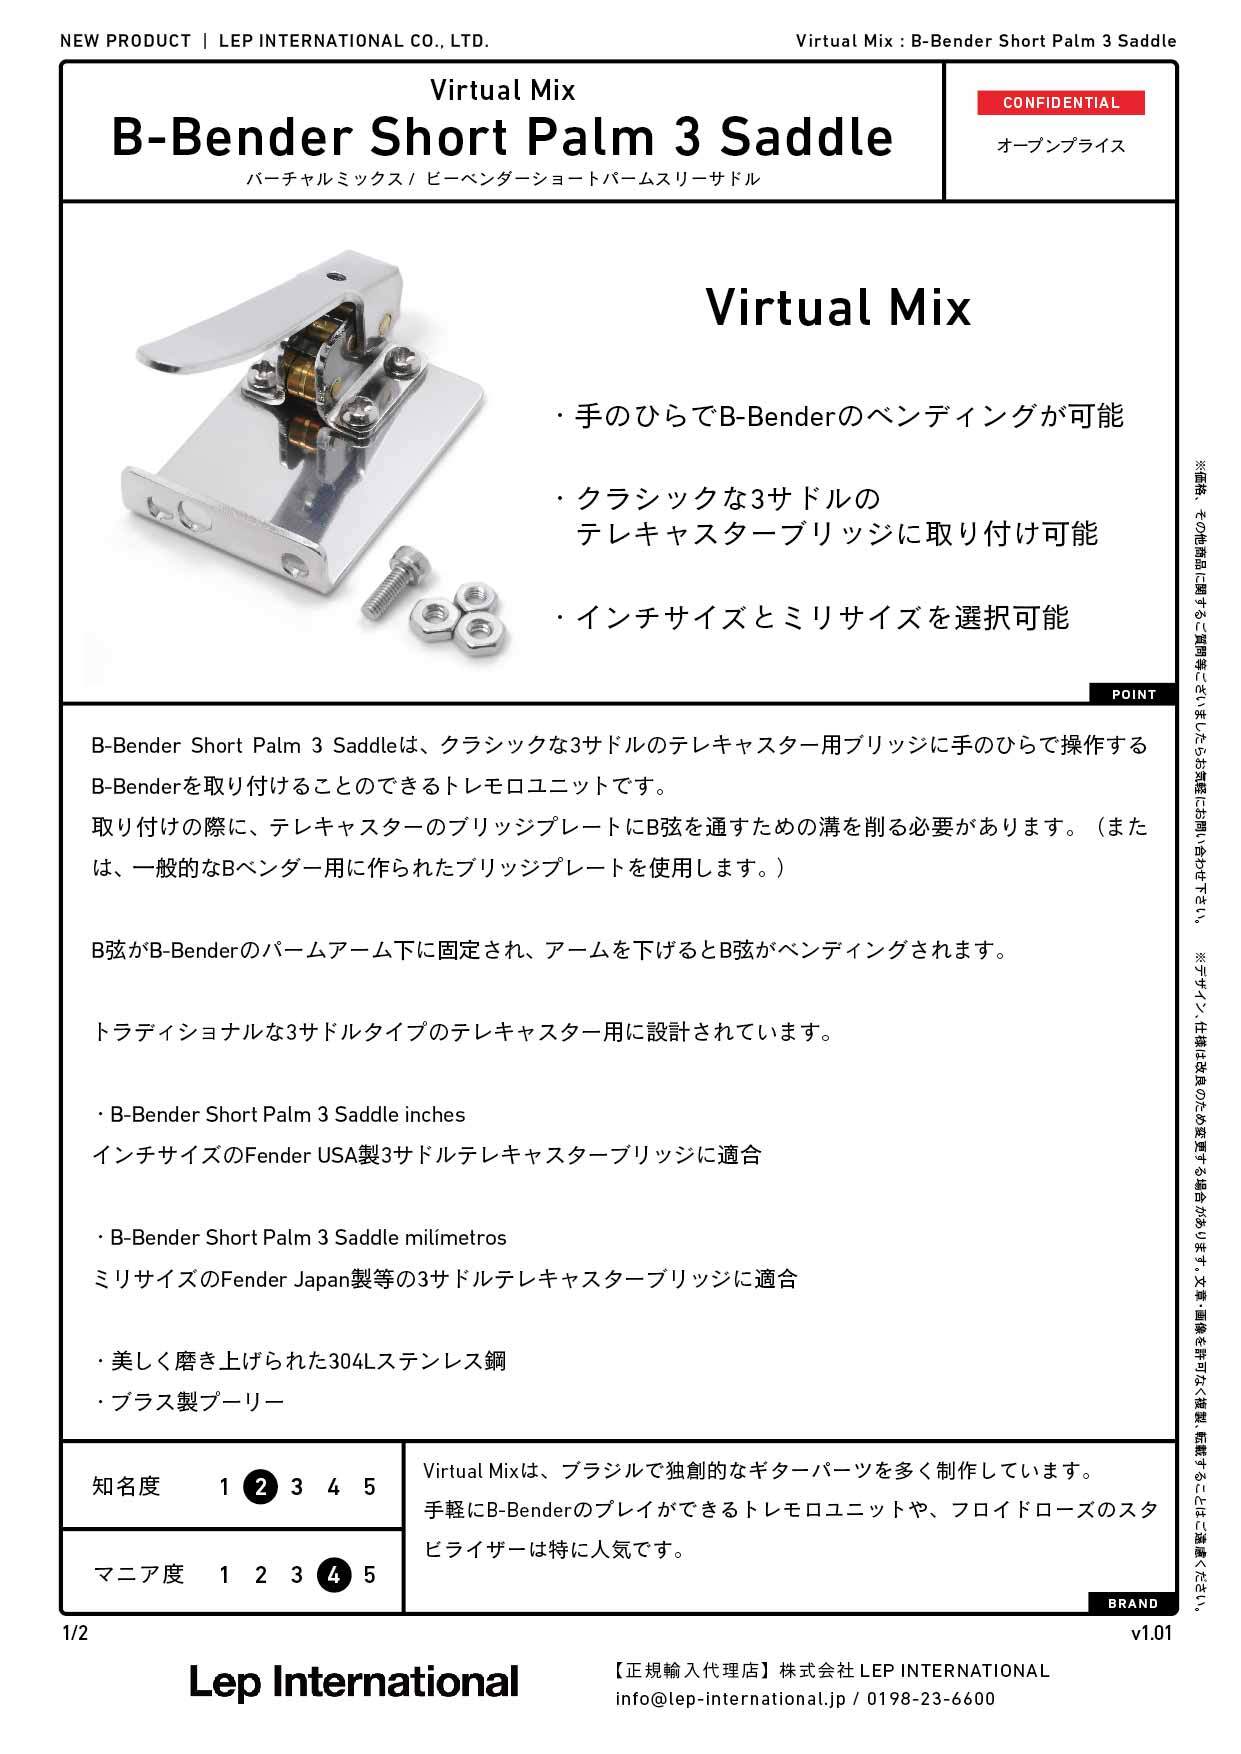 Virtual Mix / B-Bender Short Palm 3 Saddle